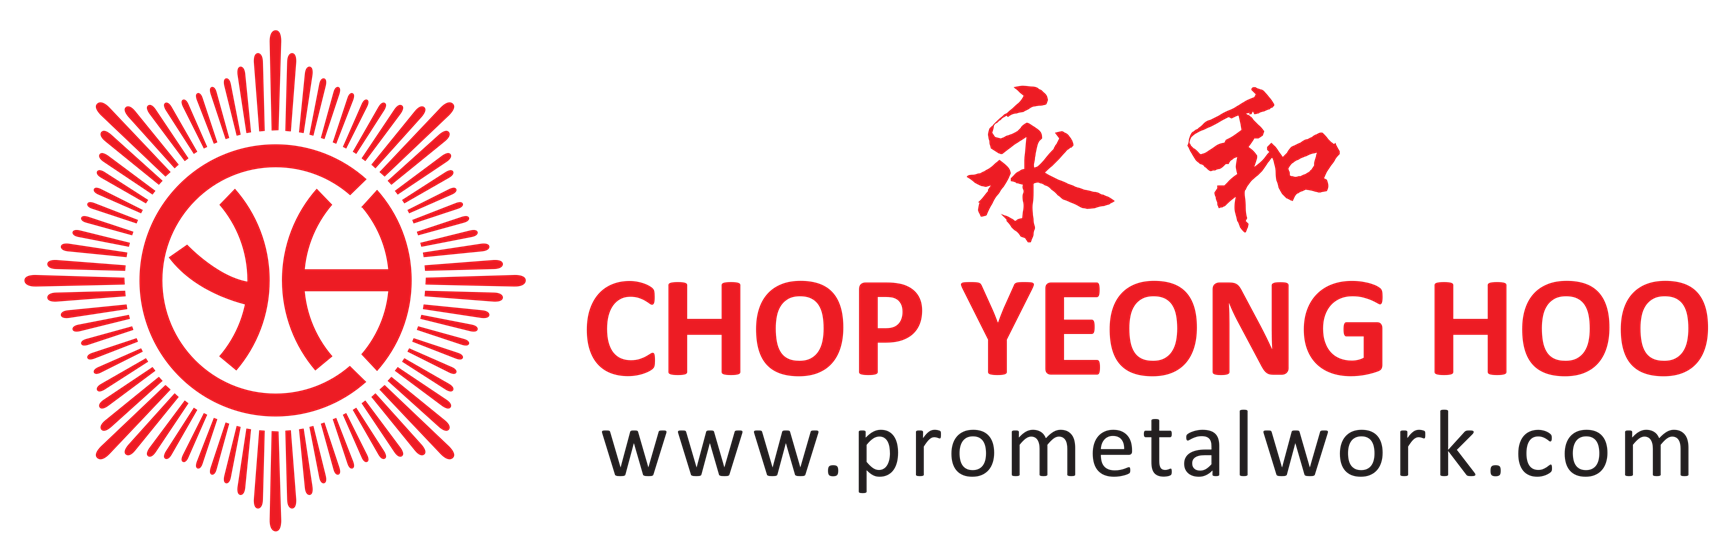 CHOP YEONG HOO